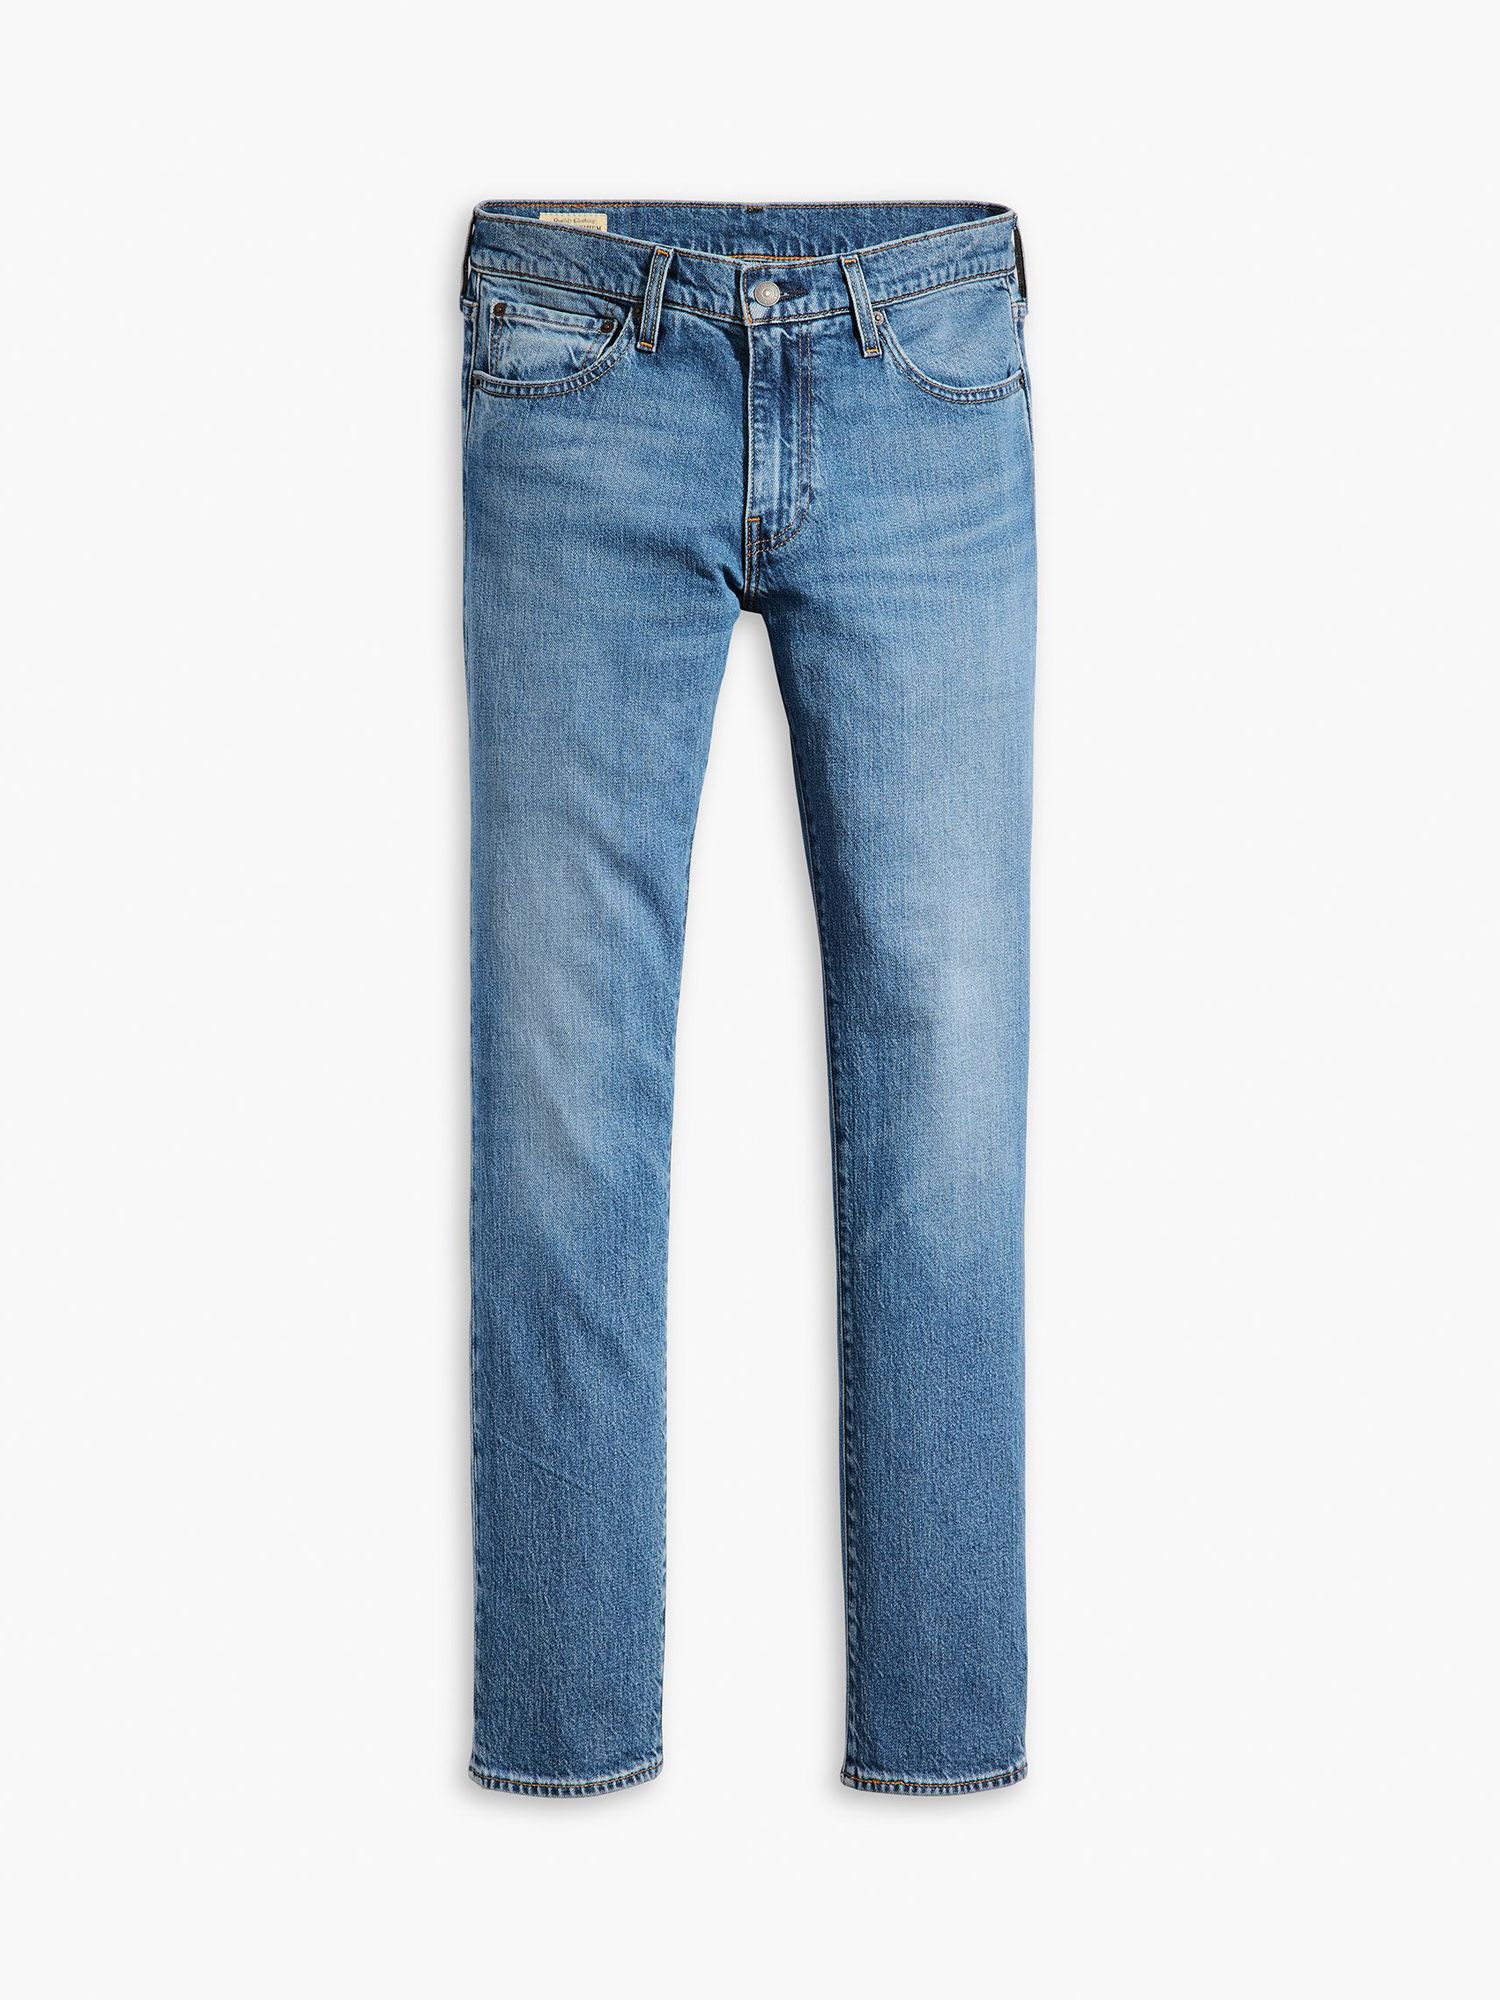 Levi's 511 Slim Fit Jeans, Blue, 32R